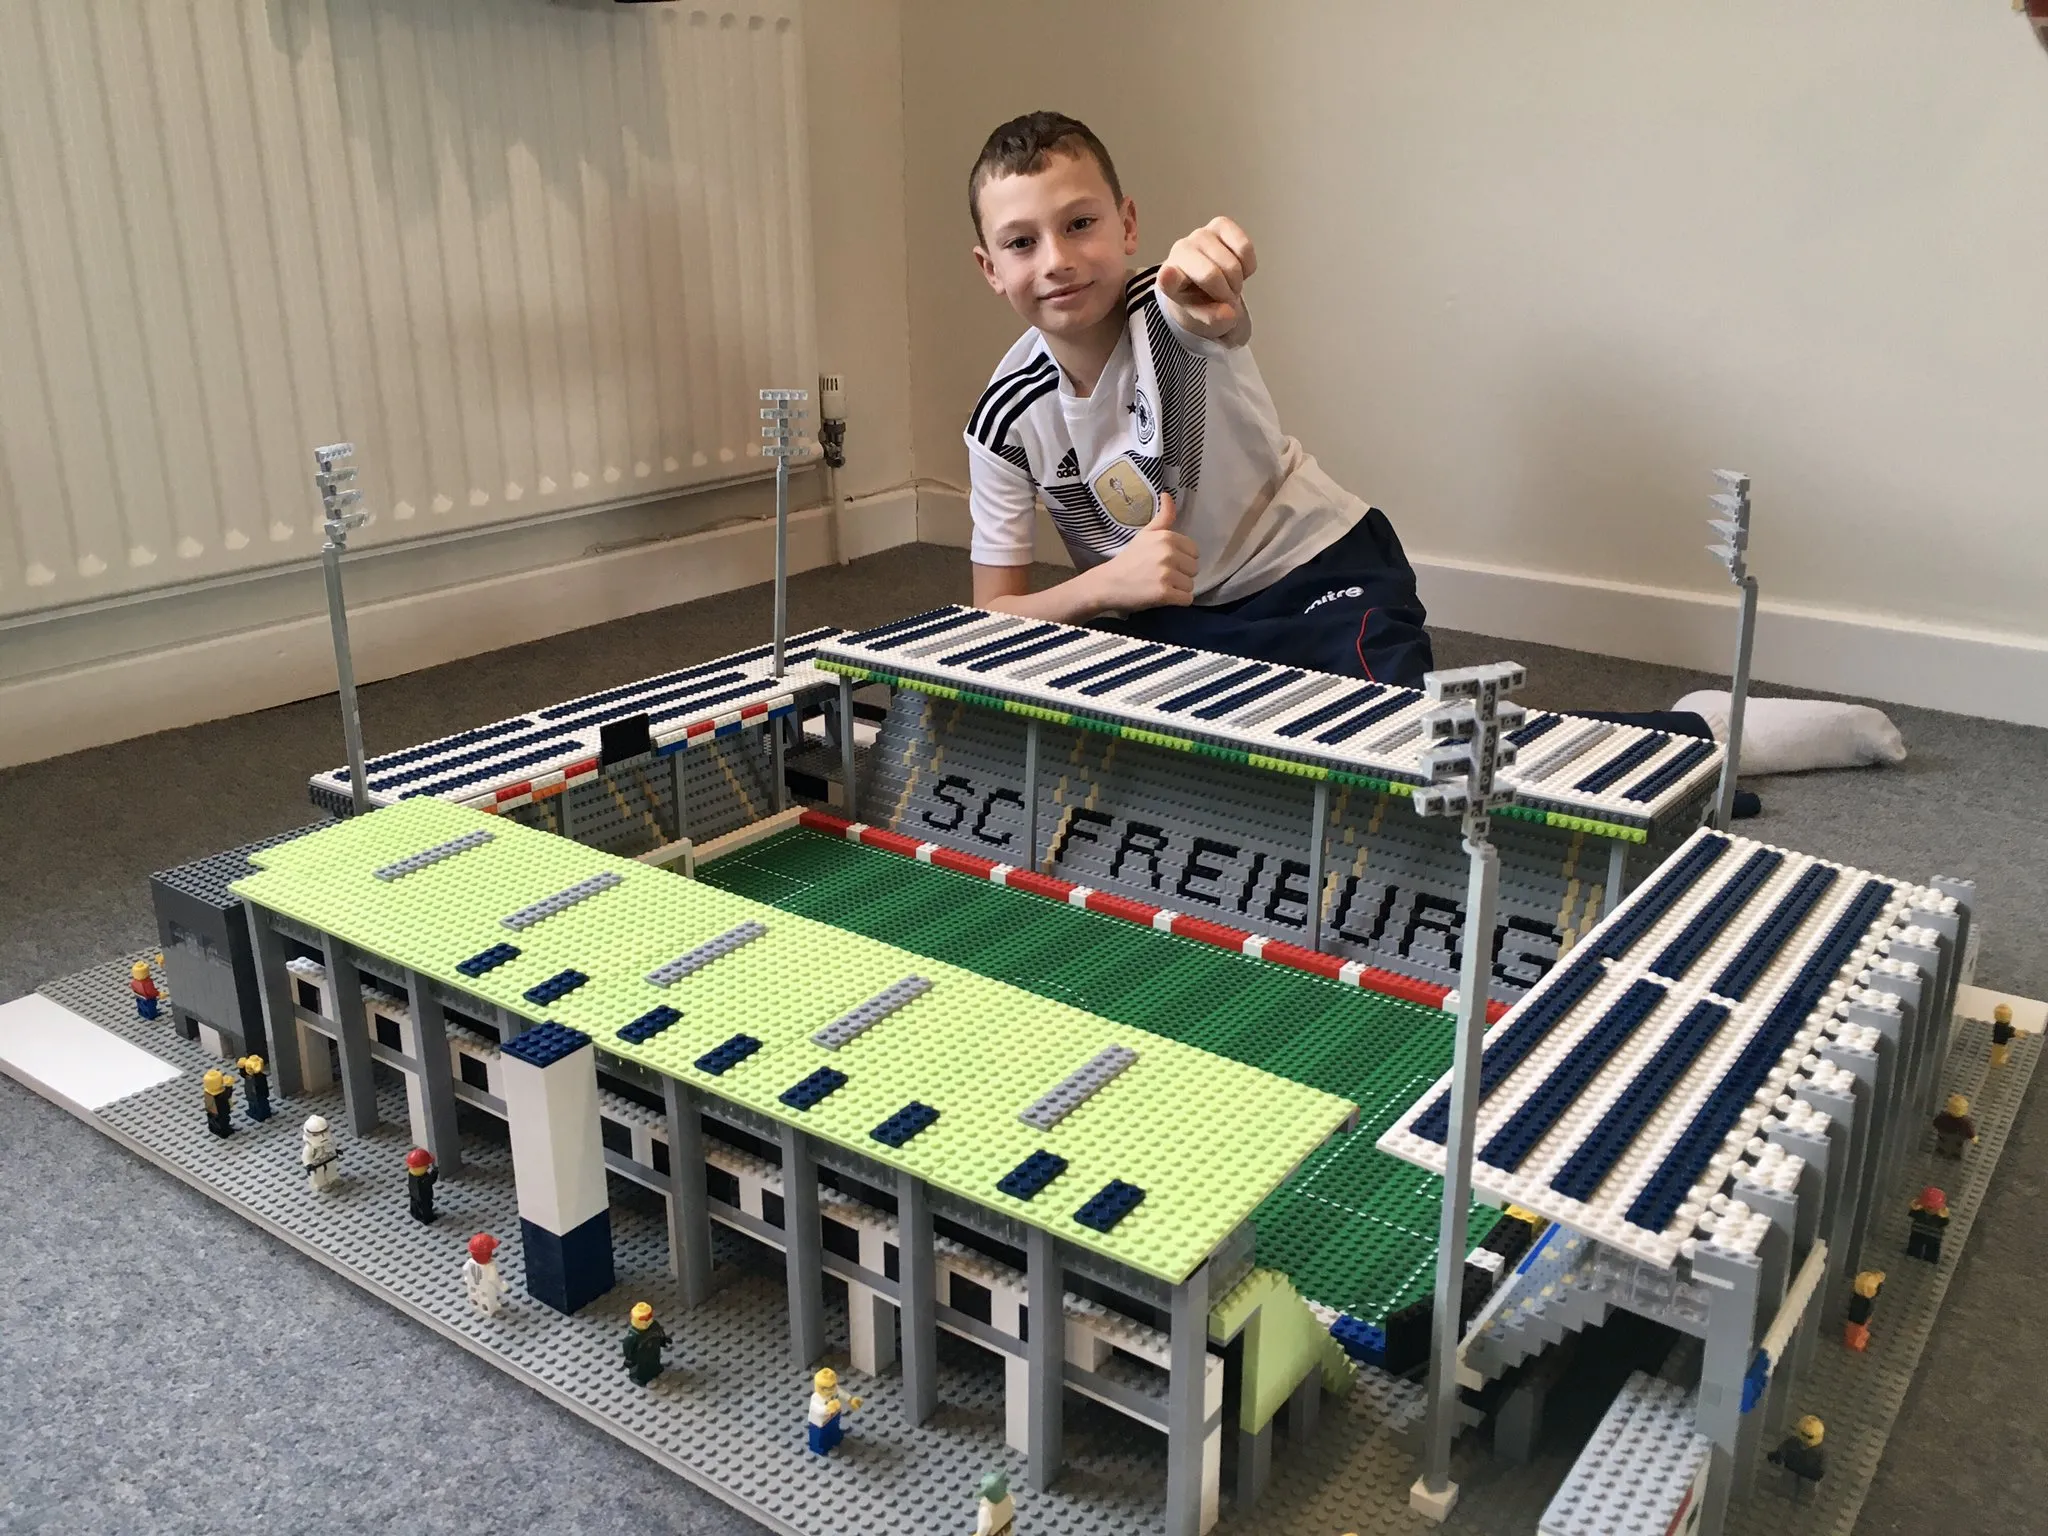 Ce jeune anglais de dix ans reproduit des stades en Lego: le